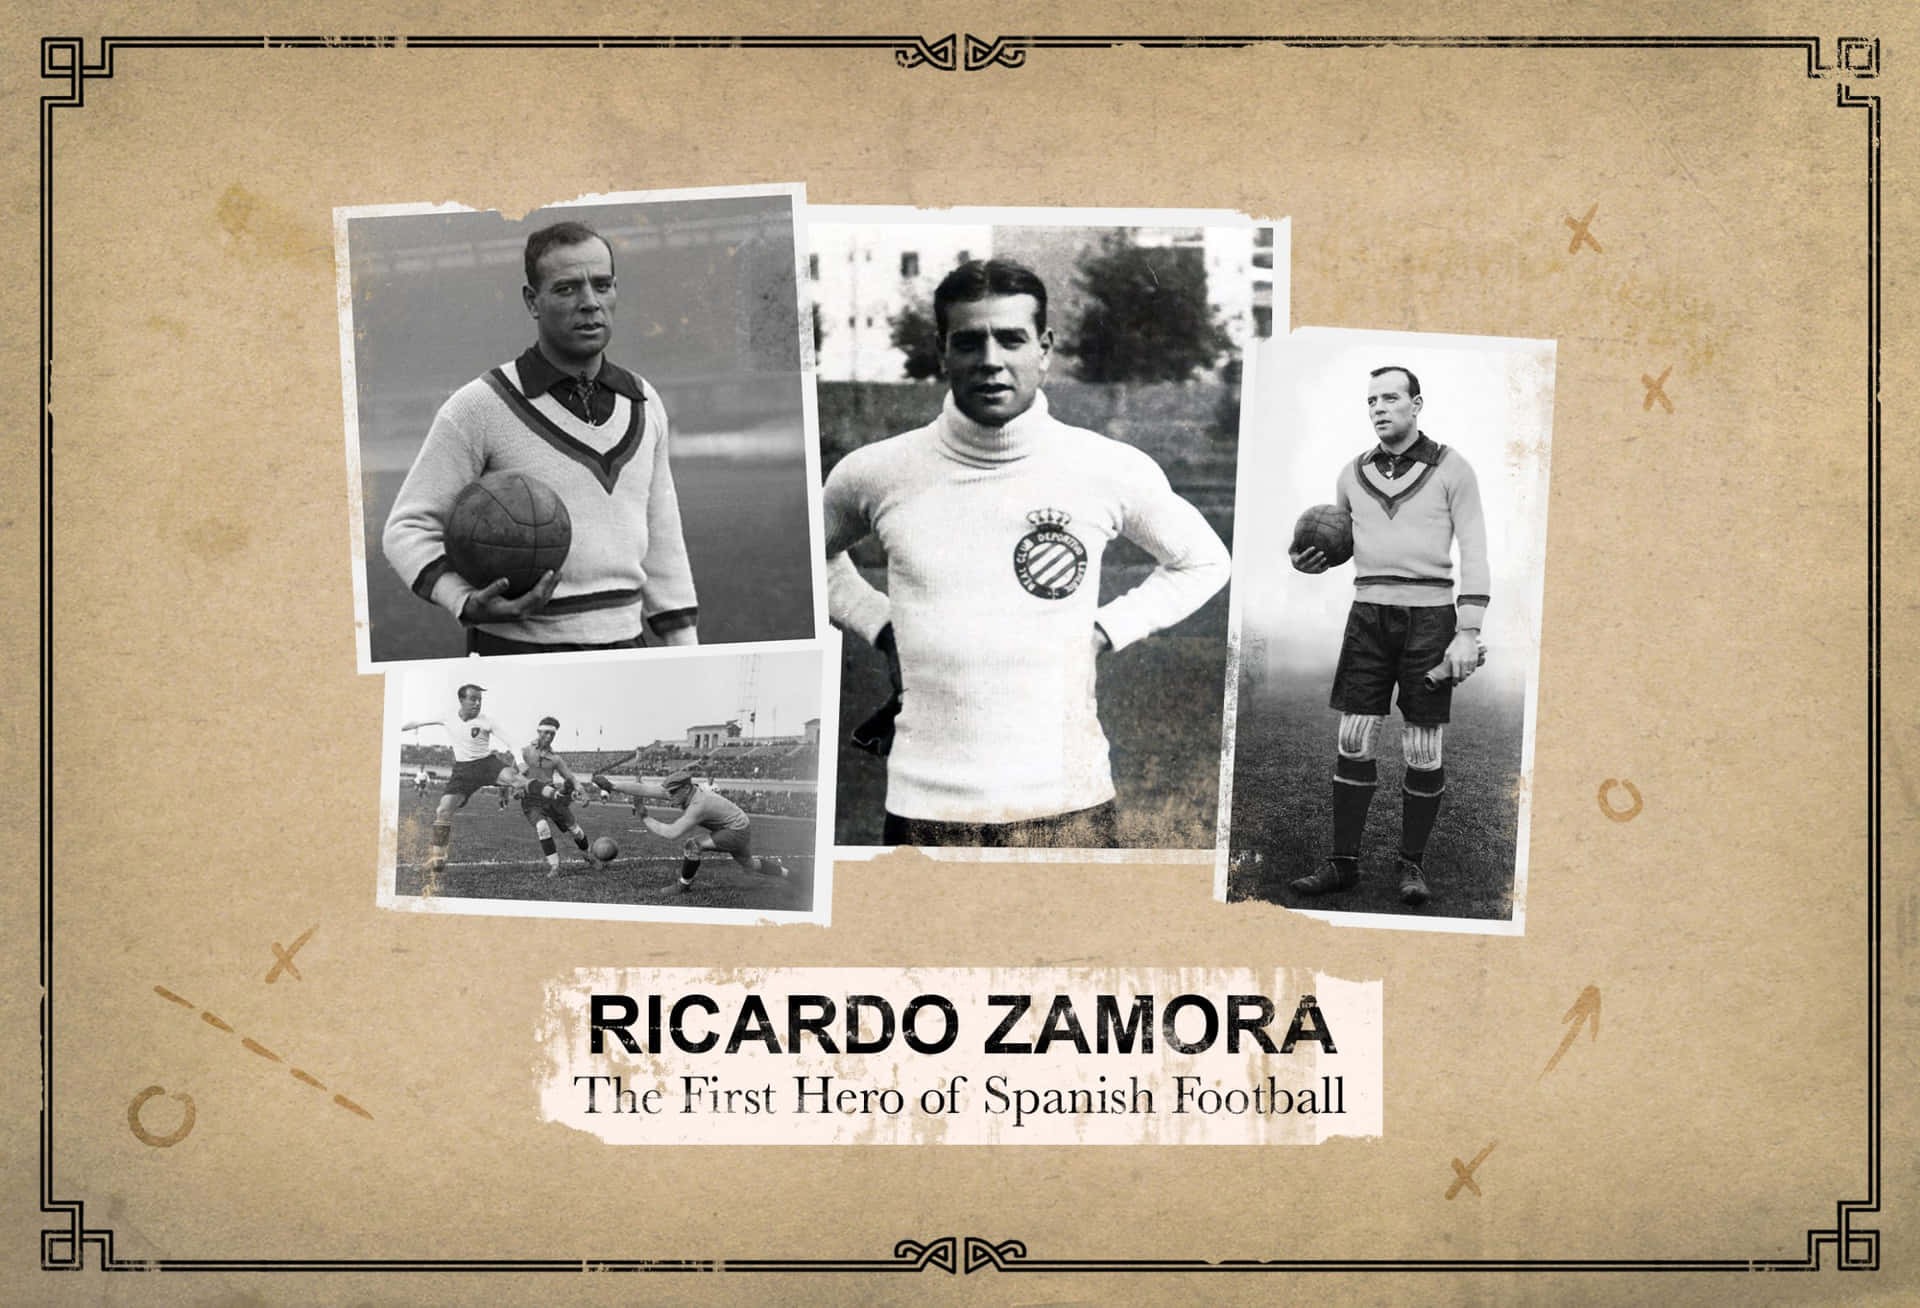 Spanskafotbollsspelaren Ricardo Zamora Grafisk Konst. Wallpaper